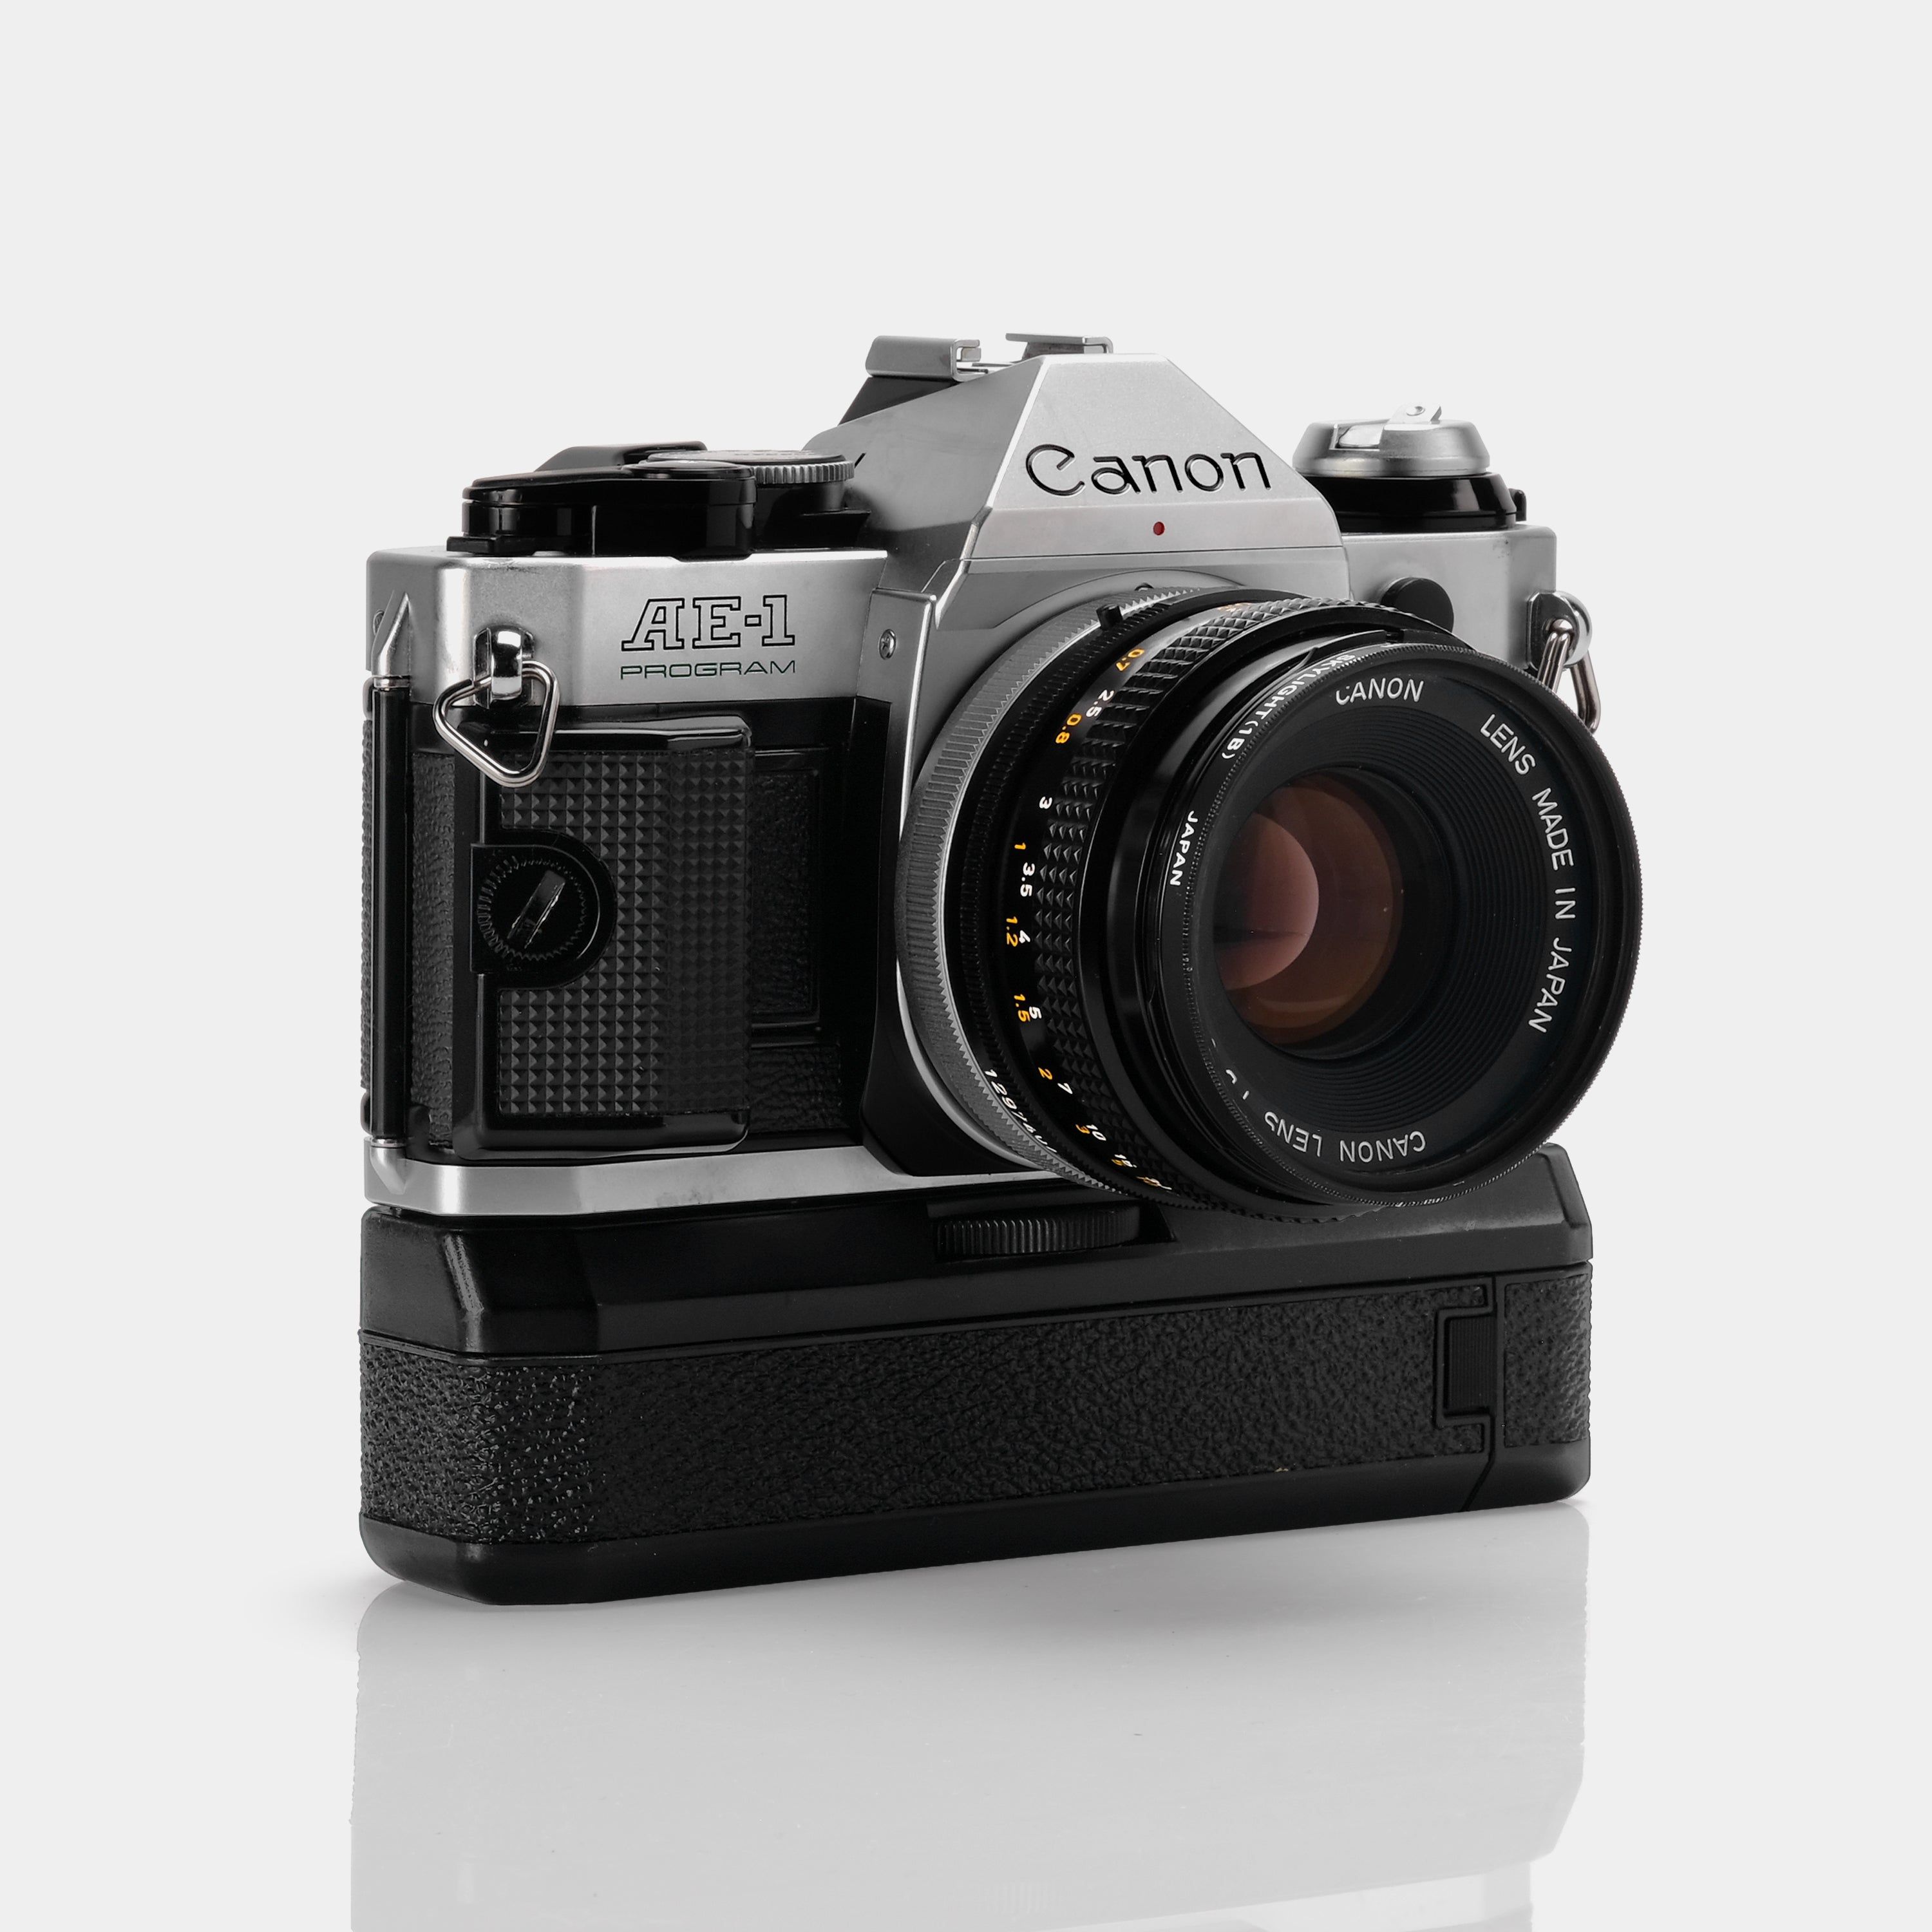 Canon AE-1 Program SLR 35mm Film Camera ("Action Kit")